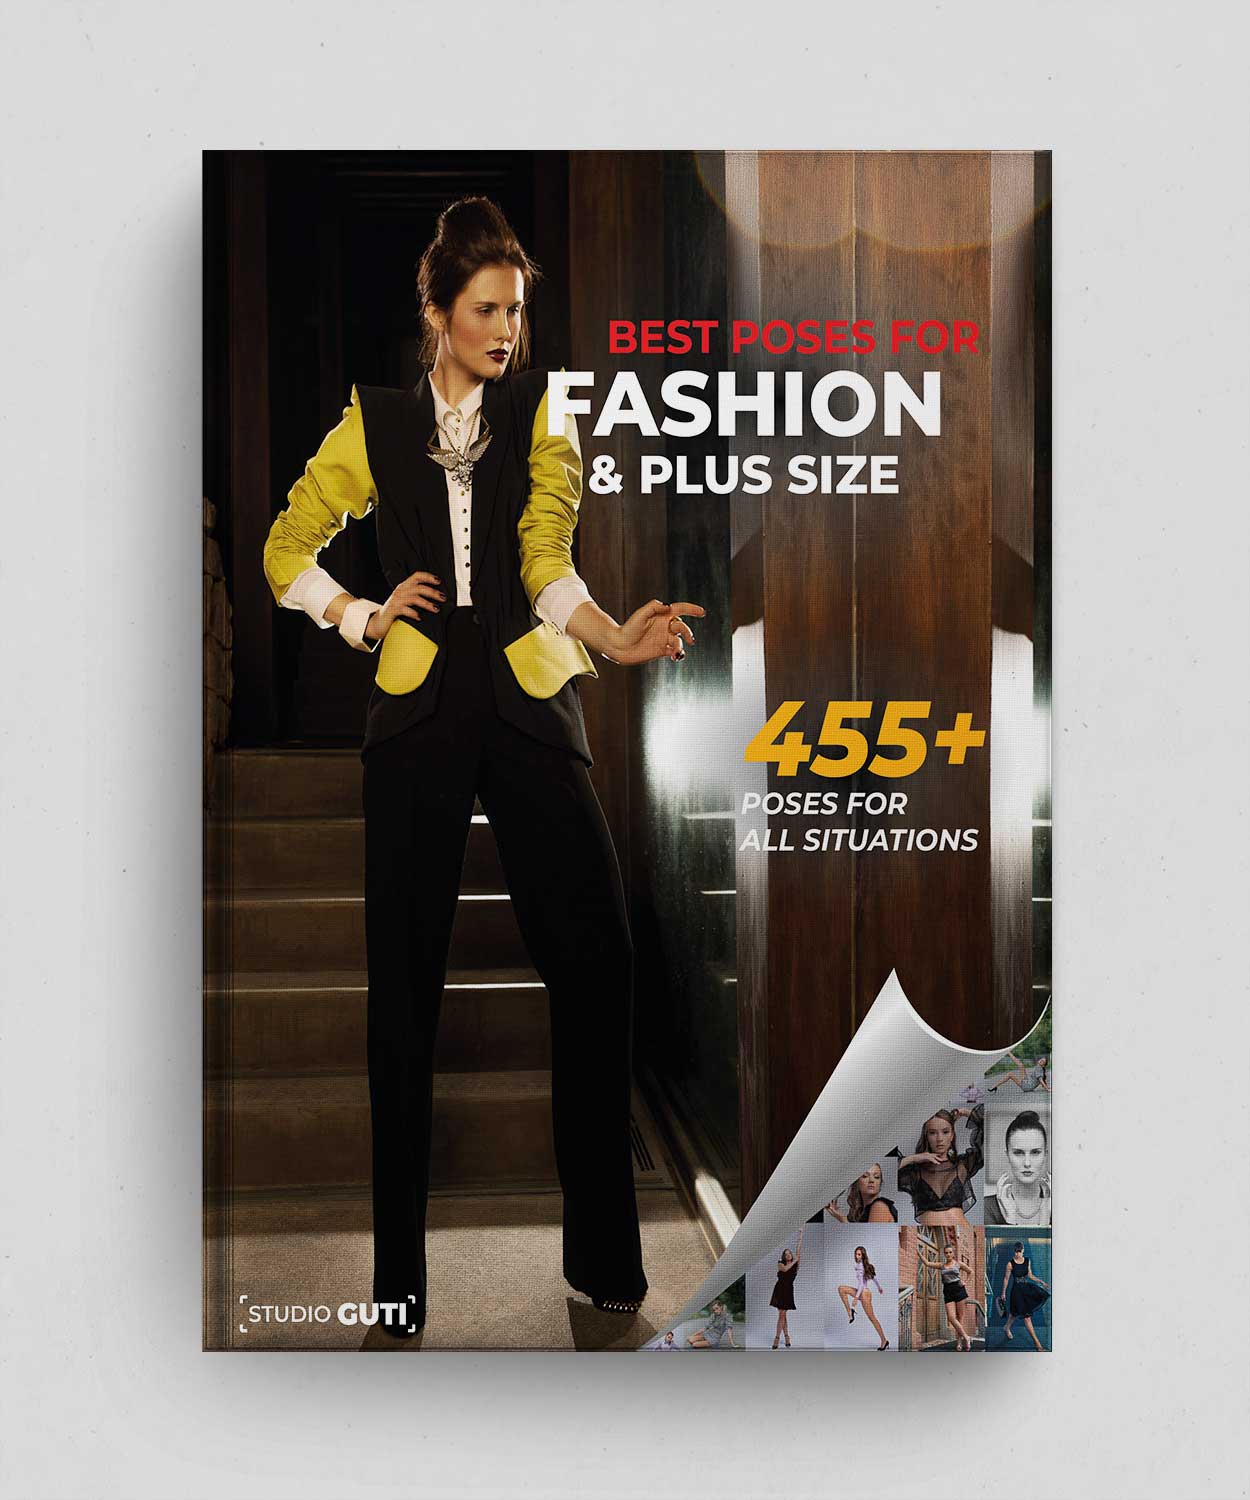 Las 455 mejores poses para moda y tallas grandes – Libro digital